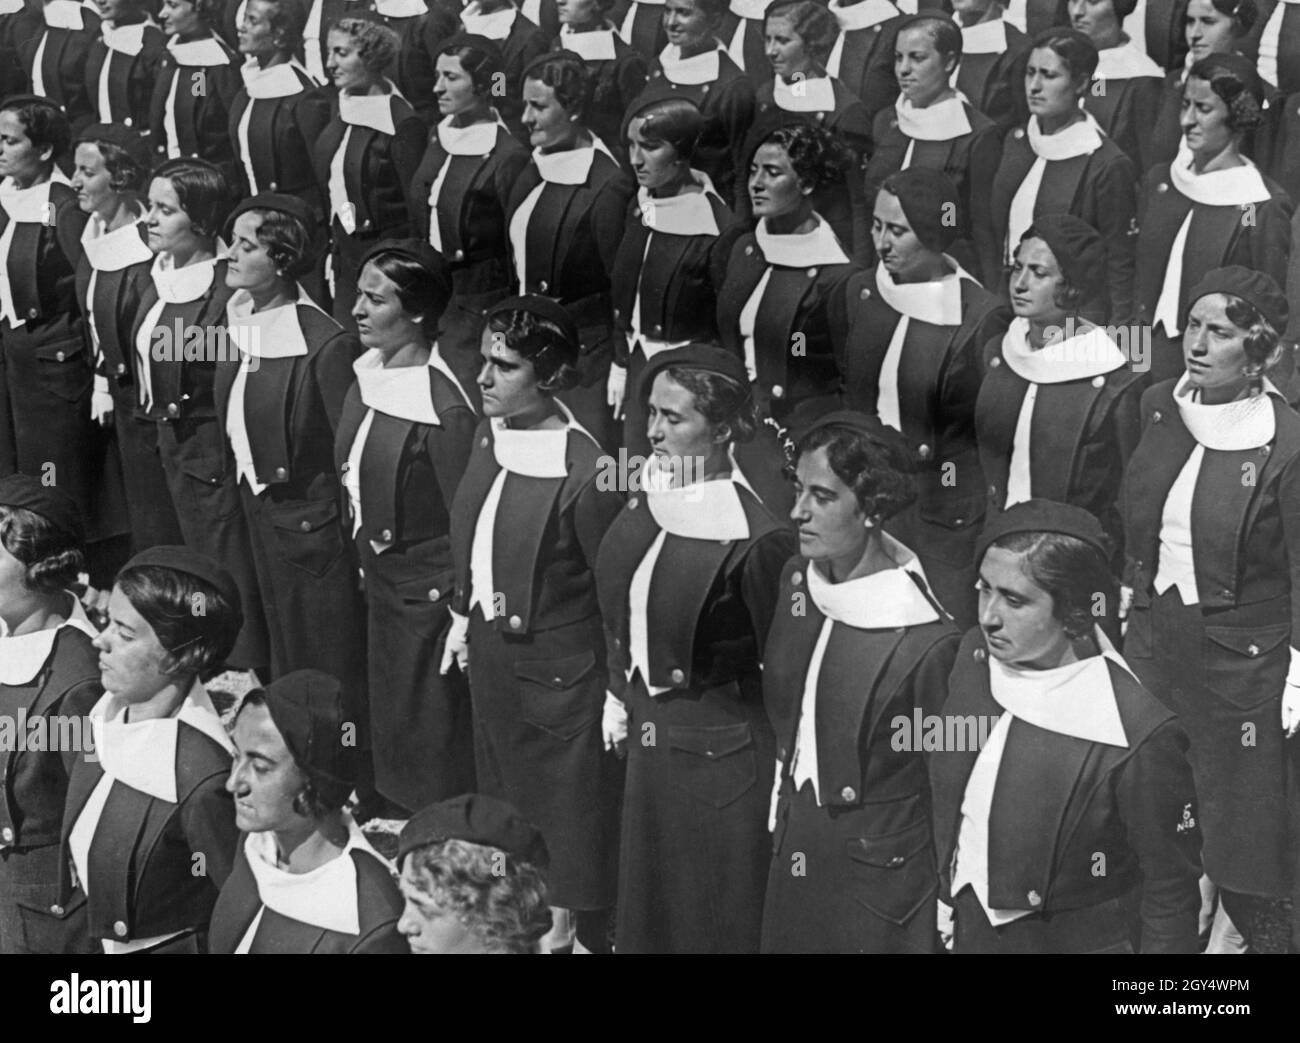 "Un gruppo di giovani donne appartenenti ai giovani fascisti, un'organizzazione fascista per le donne di età superiore ai 18 anni, si trova in linea. Sono studenti dell' Accademia fascista di Orvieto. Fotografia non scattata, probabilmente scattata intorno al 1935. [traduzione automatizzata]' Foto Stock